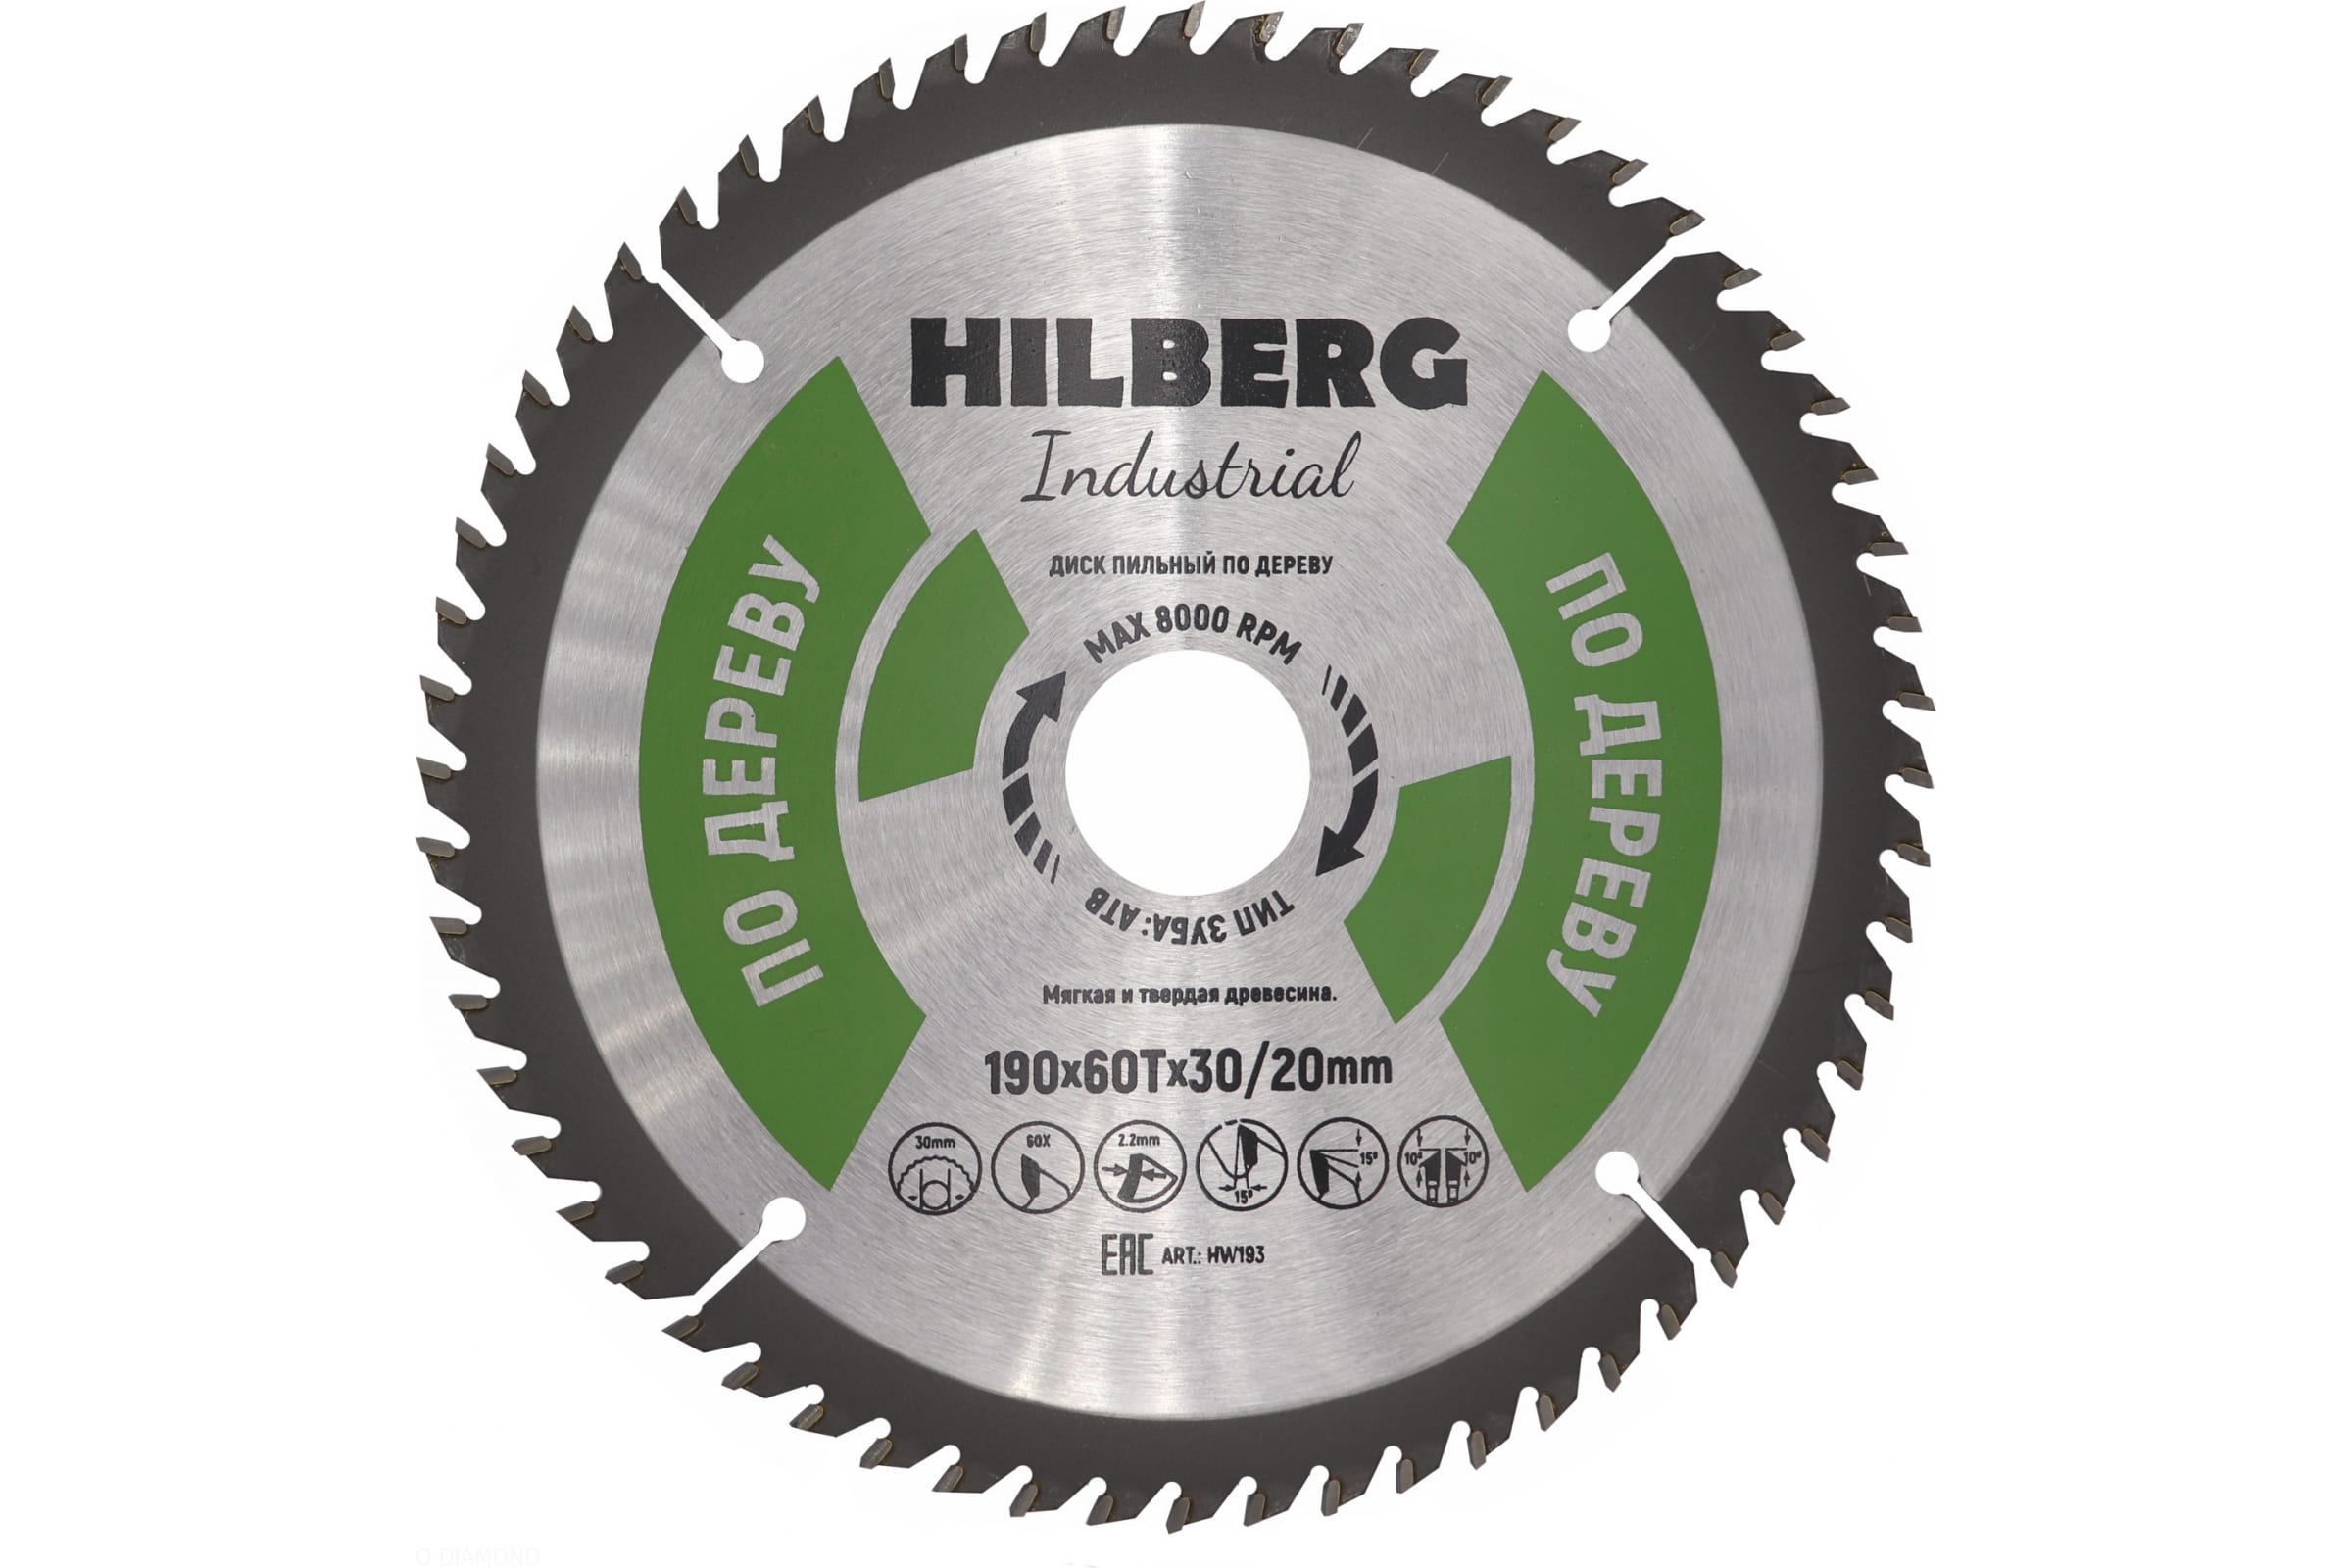 Диск пильный по дереву Hilberg Industrial  30/20 х 190 мм 60 зубцов